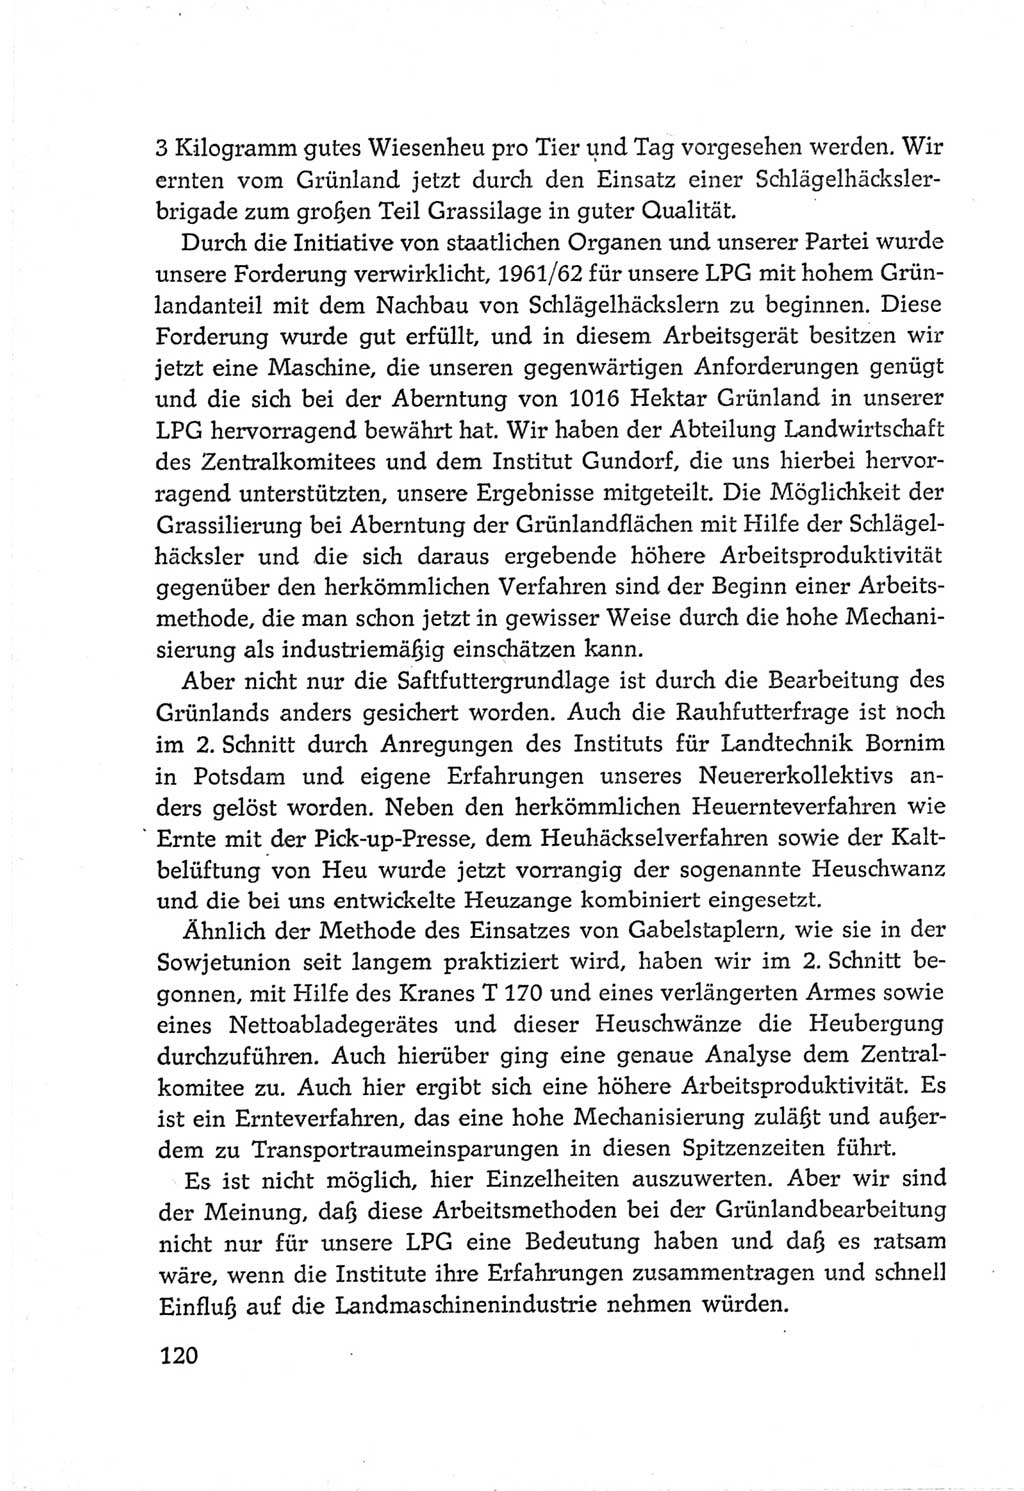 Protokoll der Verhandlungen des Ⅵ. Parteitages der Sozialistischen Einheitspartei Deutschlands (SED) [Deutsche Demokratische Republik (DDR)] 1963, Band Ⅲ, Seite 120 (Prot. Verh. Ⅵ. PT SED DDR 1963, Bd. Ⅲ, S. 120)